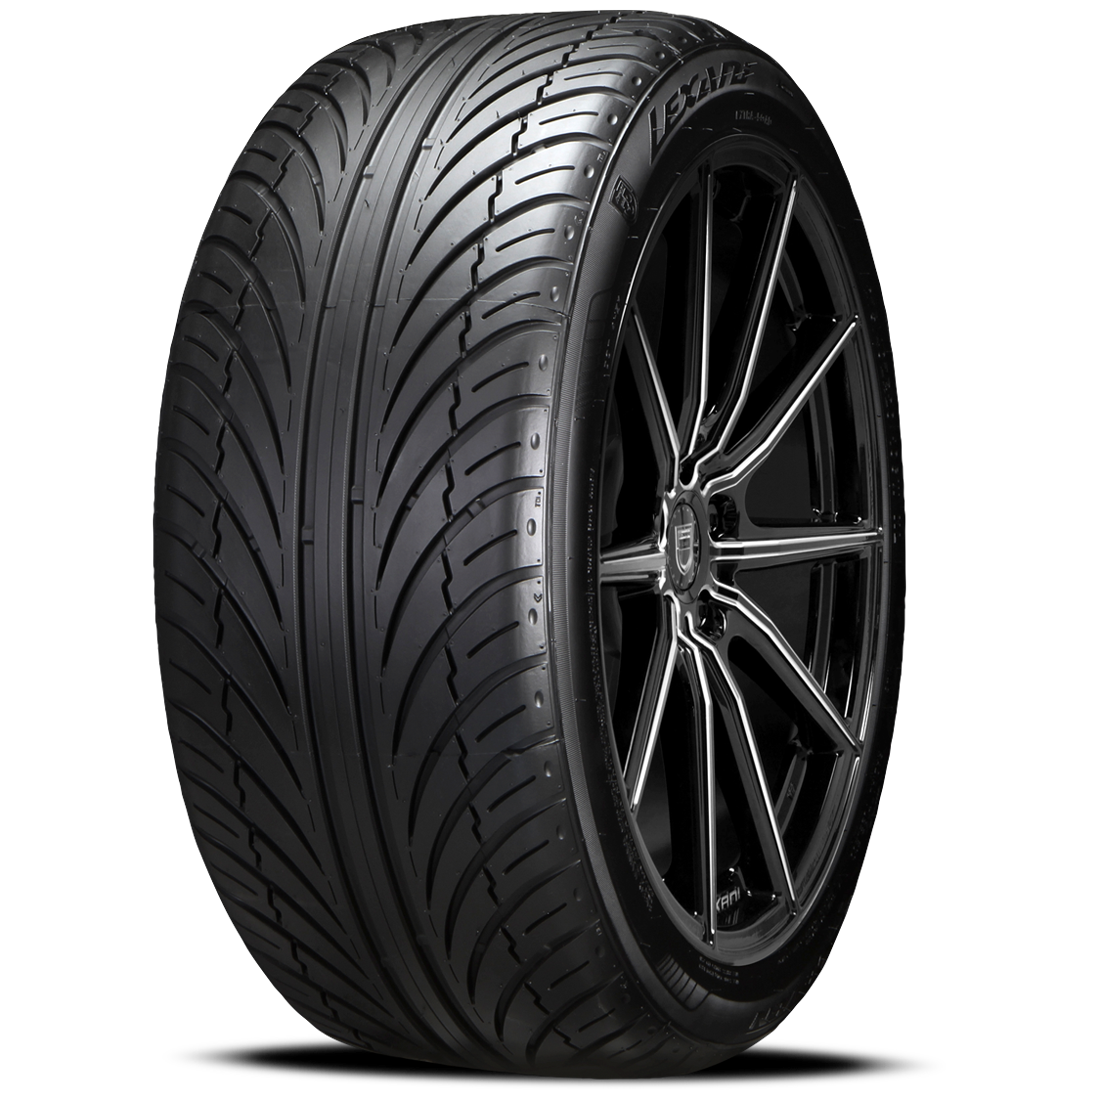 LEXANI LX-SEVEN 225/30ZR22 (27.4X9.1R 22) Tires